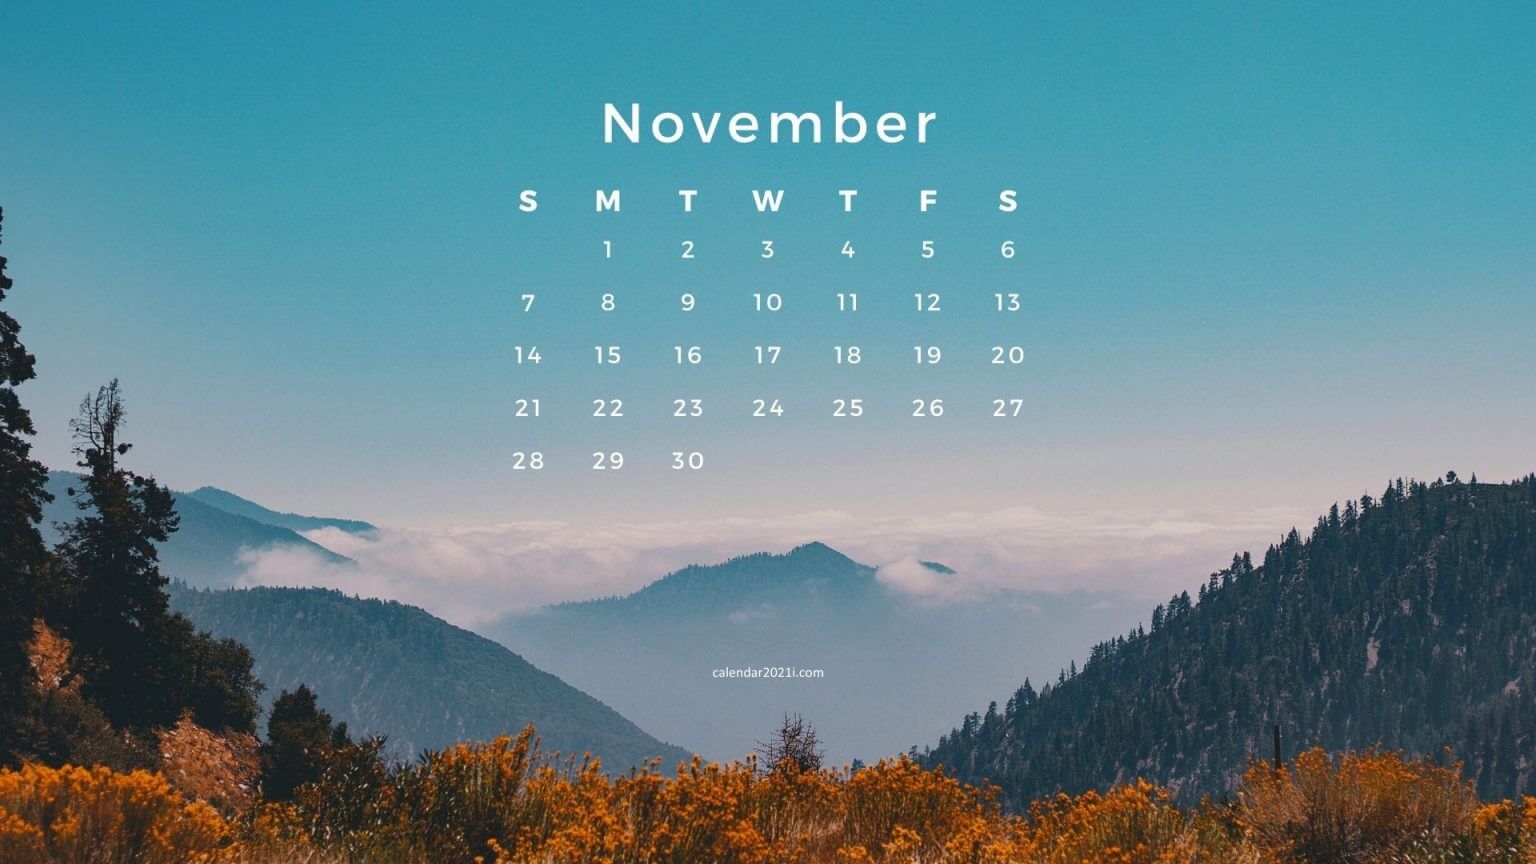 November 2021 Screensaver Background Calendar